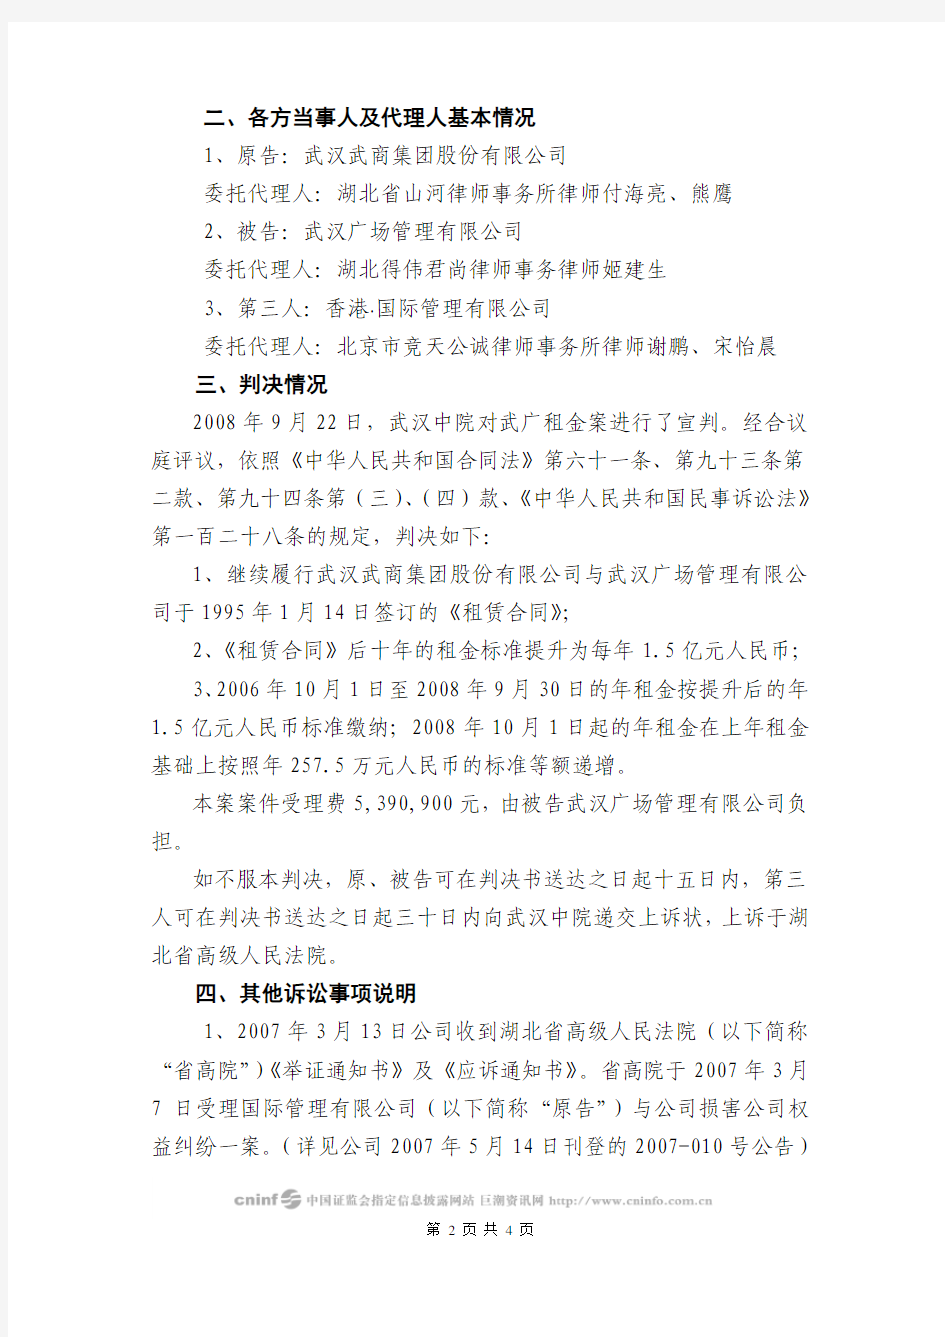 武汉武商集团股份有限公司重大诉讼结果公告